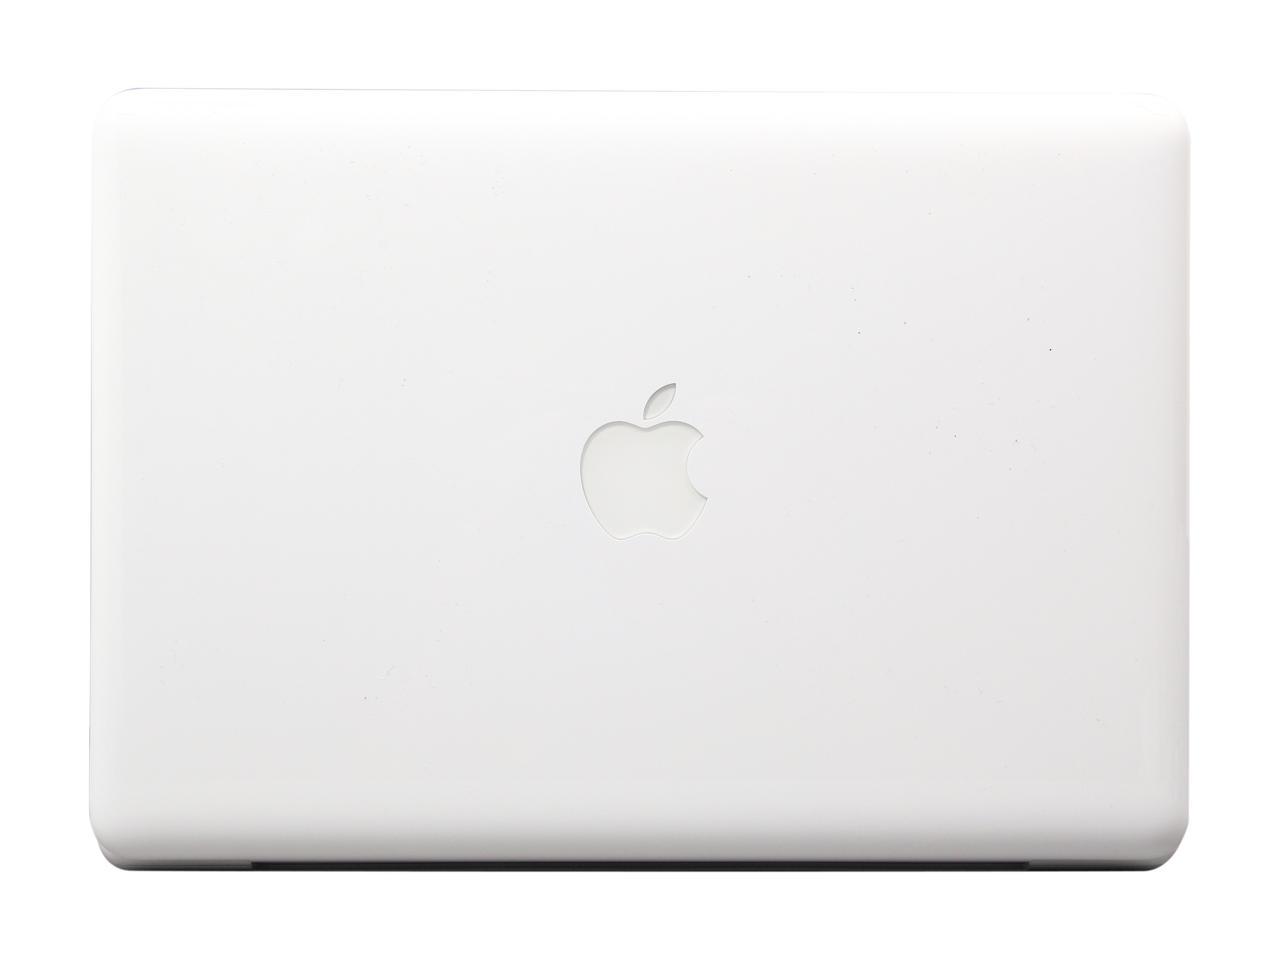 apple-late-2009-13.3-inch-macbook-a1342-white-c2d - 2.26ghz processor, 2gb ram, 940m - 256mb gpu-mc207ll/a-3